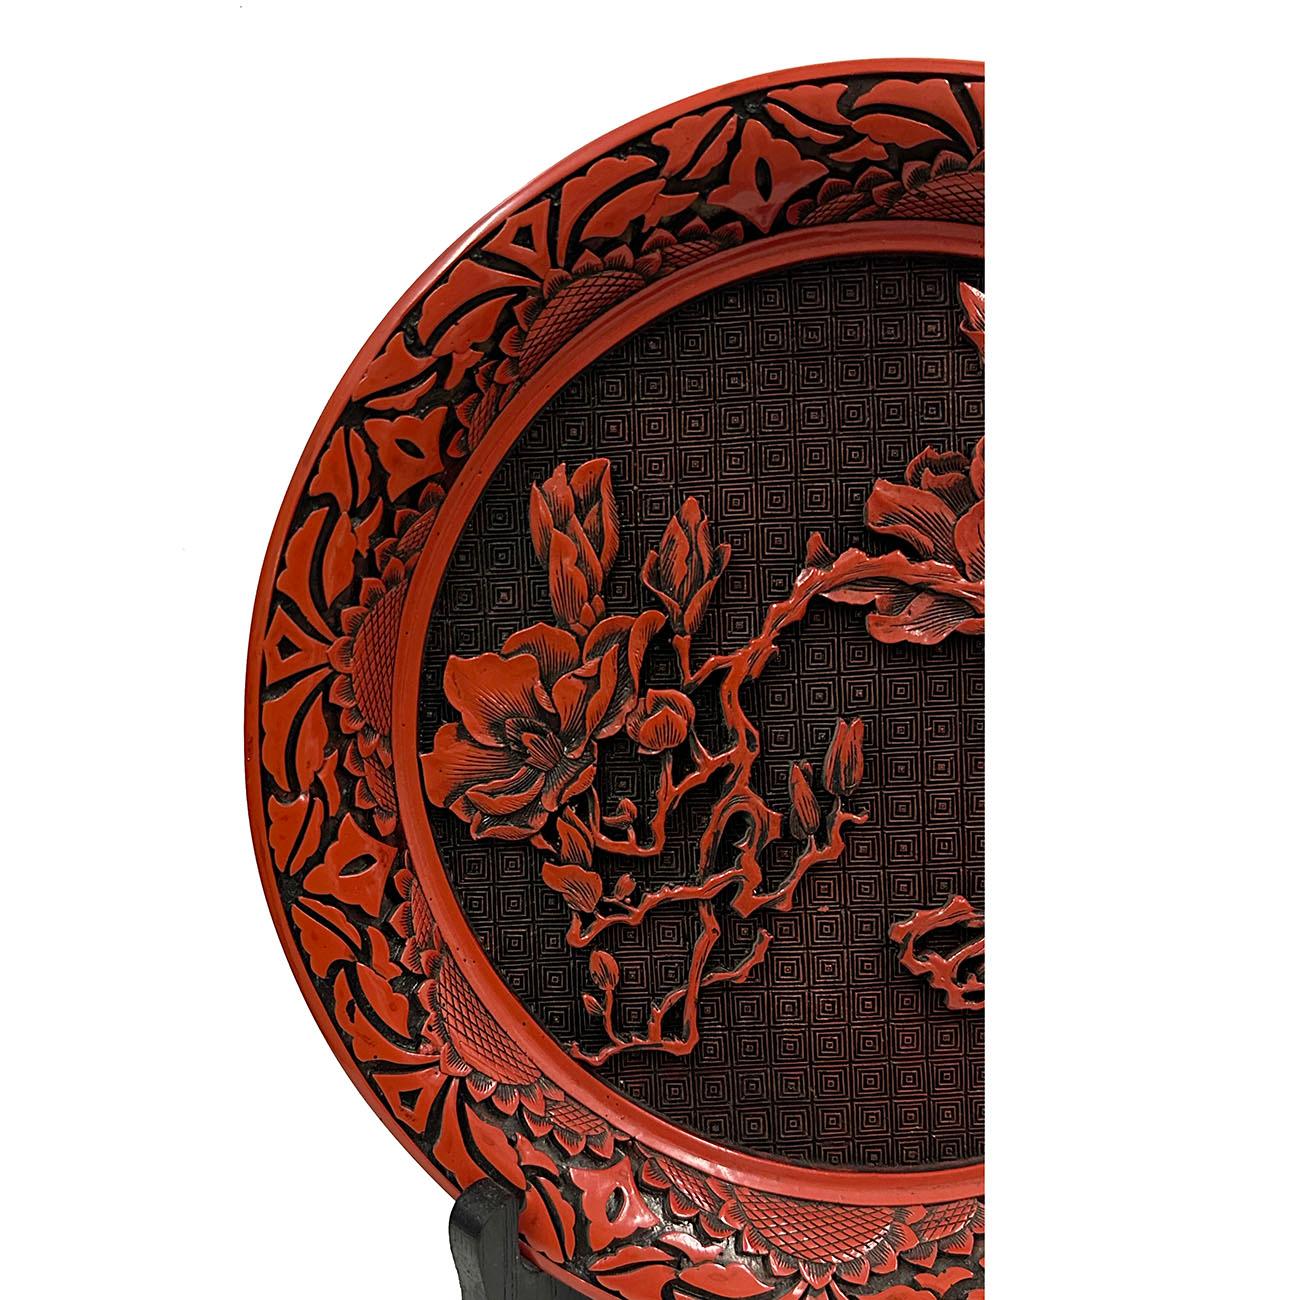 Diese atemberaubende chinesische Hand geschnitzt Zinnober lackiert Platte hat komplizierte Lackschnitzerei Kunst der traditionellen chinesischen Floral Szene Design, ein Original-Kunstwerke in der Tradition der chinesischen Völker. Es zeigt die